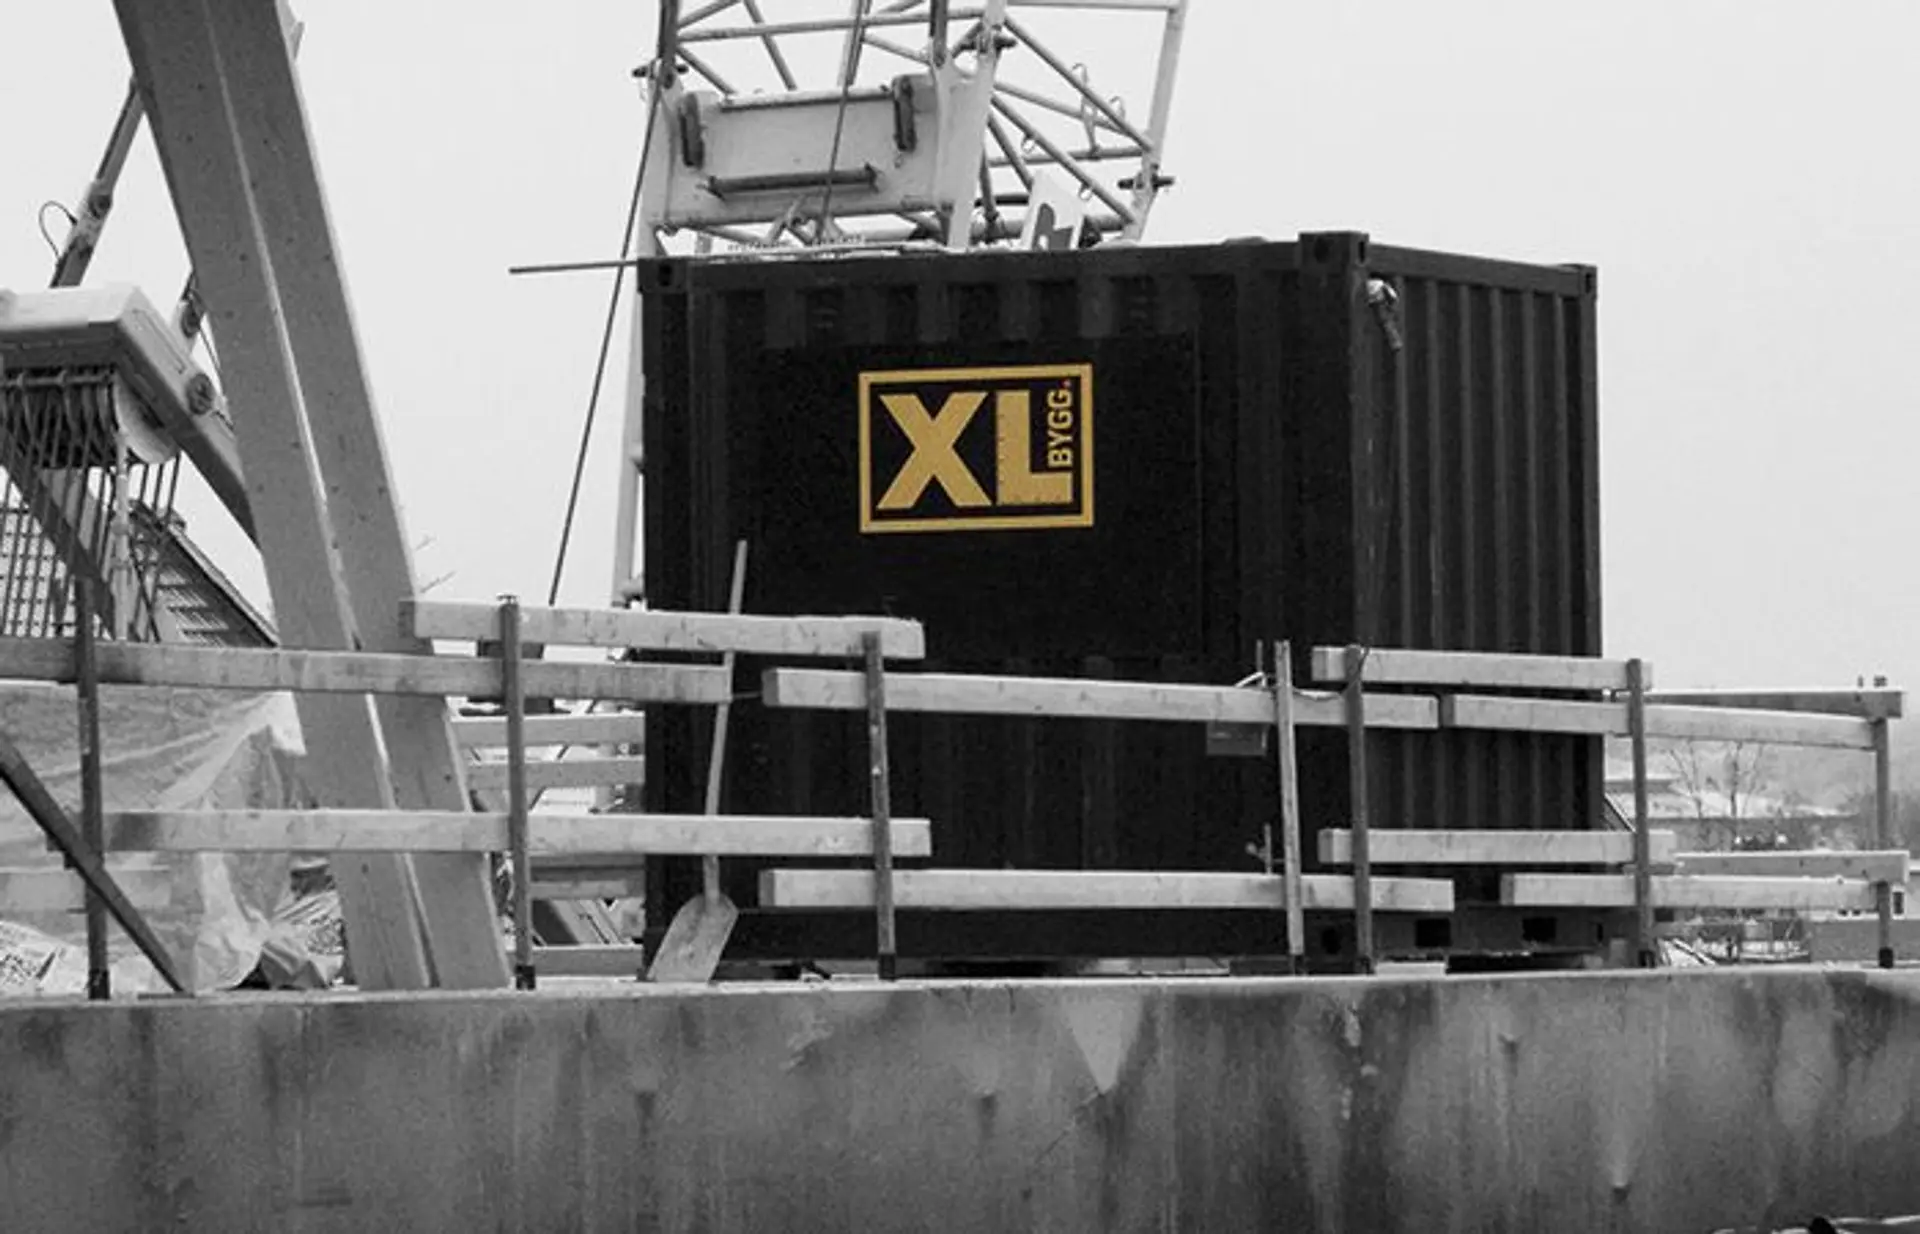 varecontainer fra XL-BYGG står på en byggeplass